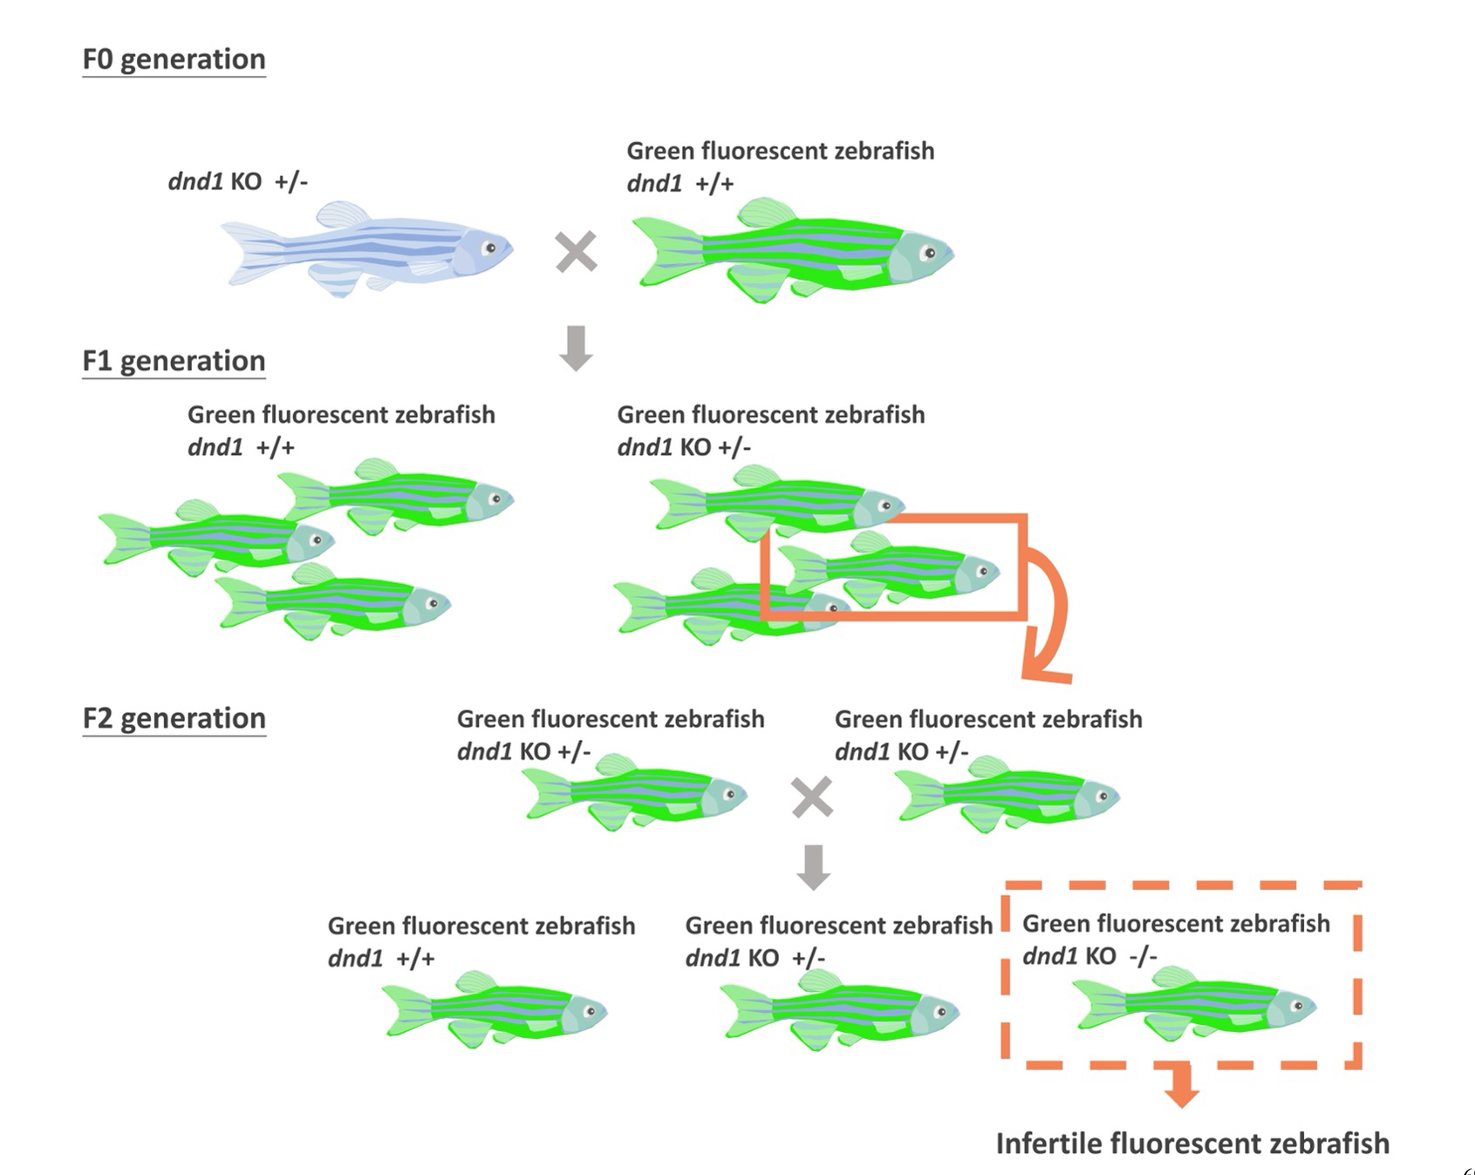 基因體編輯技術在觀賞魚精準育種之應用